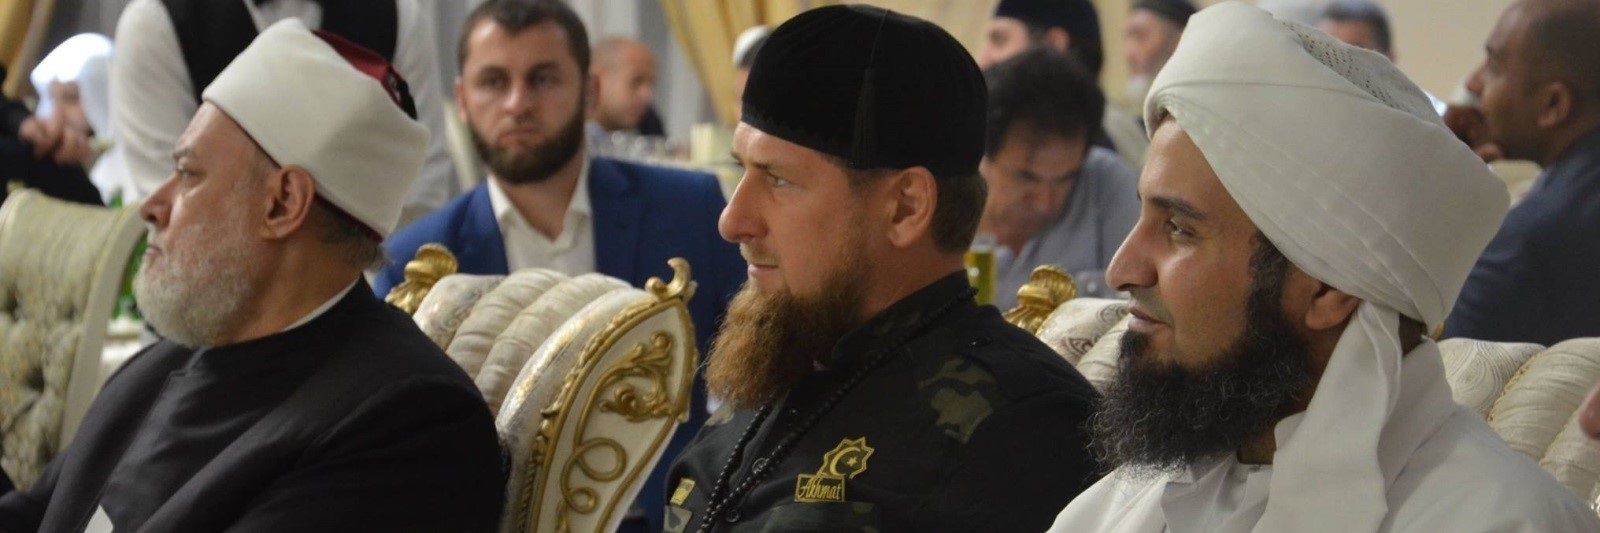 
علي الجفري وعلي جمعة، يتوسطهم قديروف حاكم الشيشان (مواقع التواصل)
